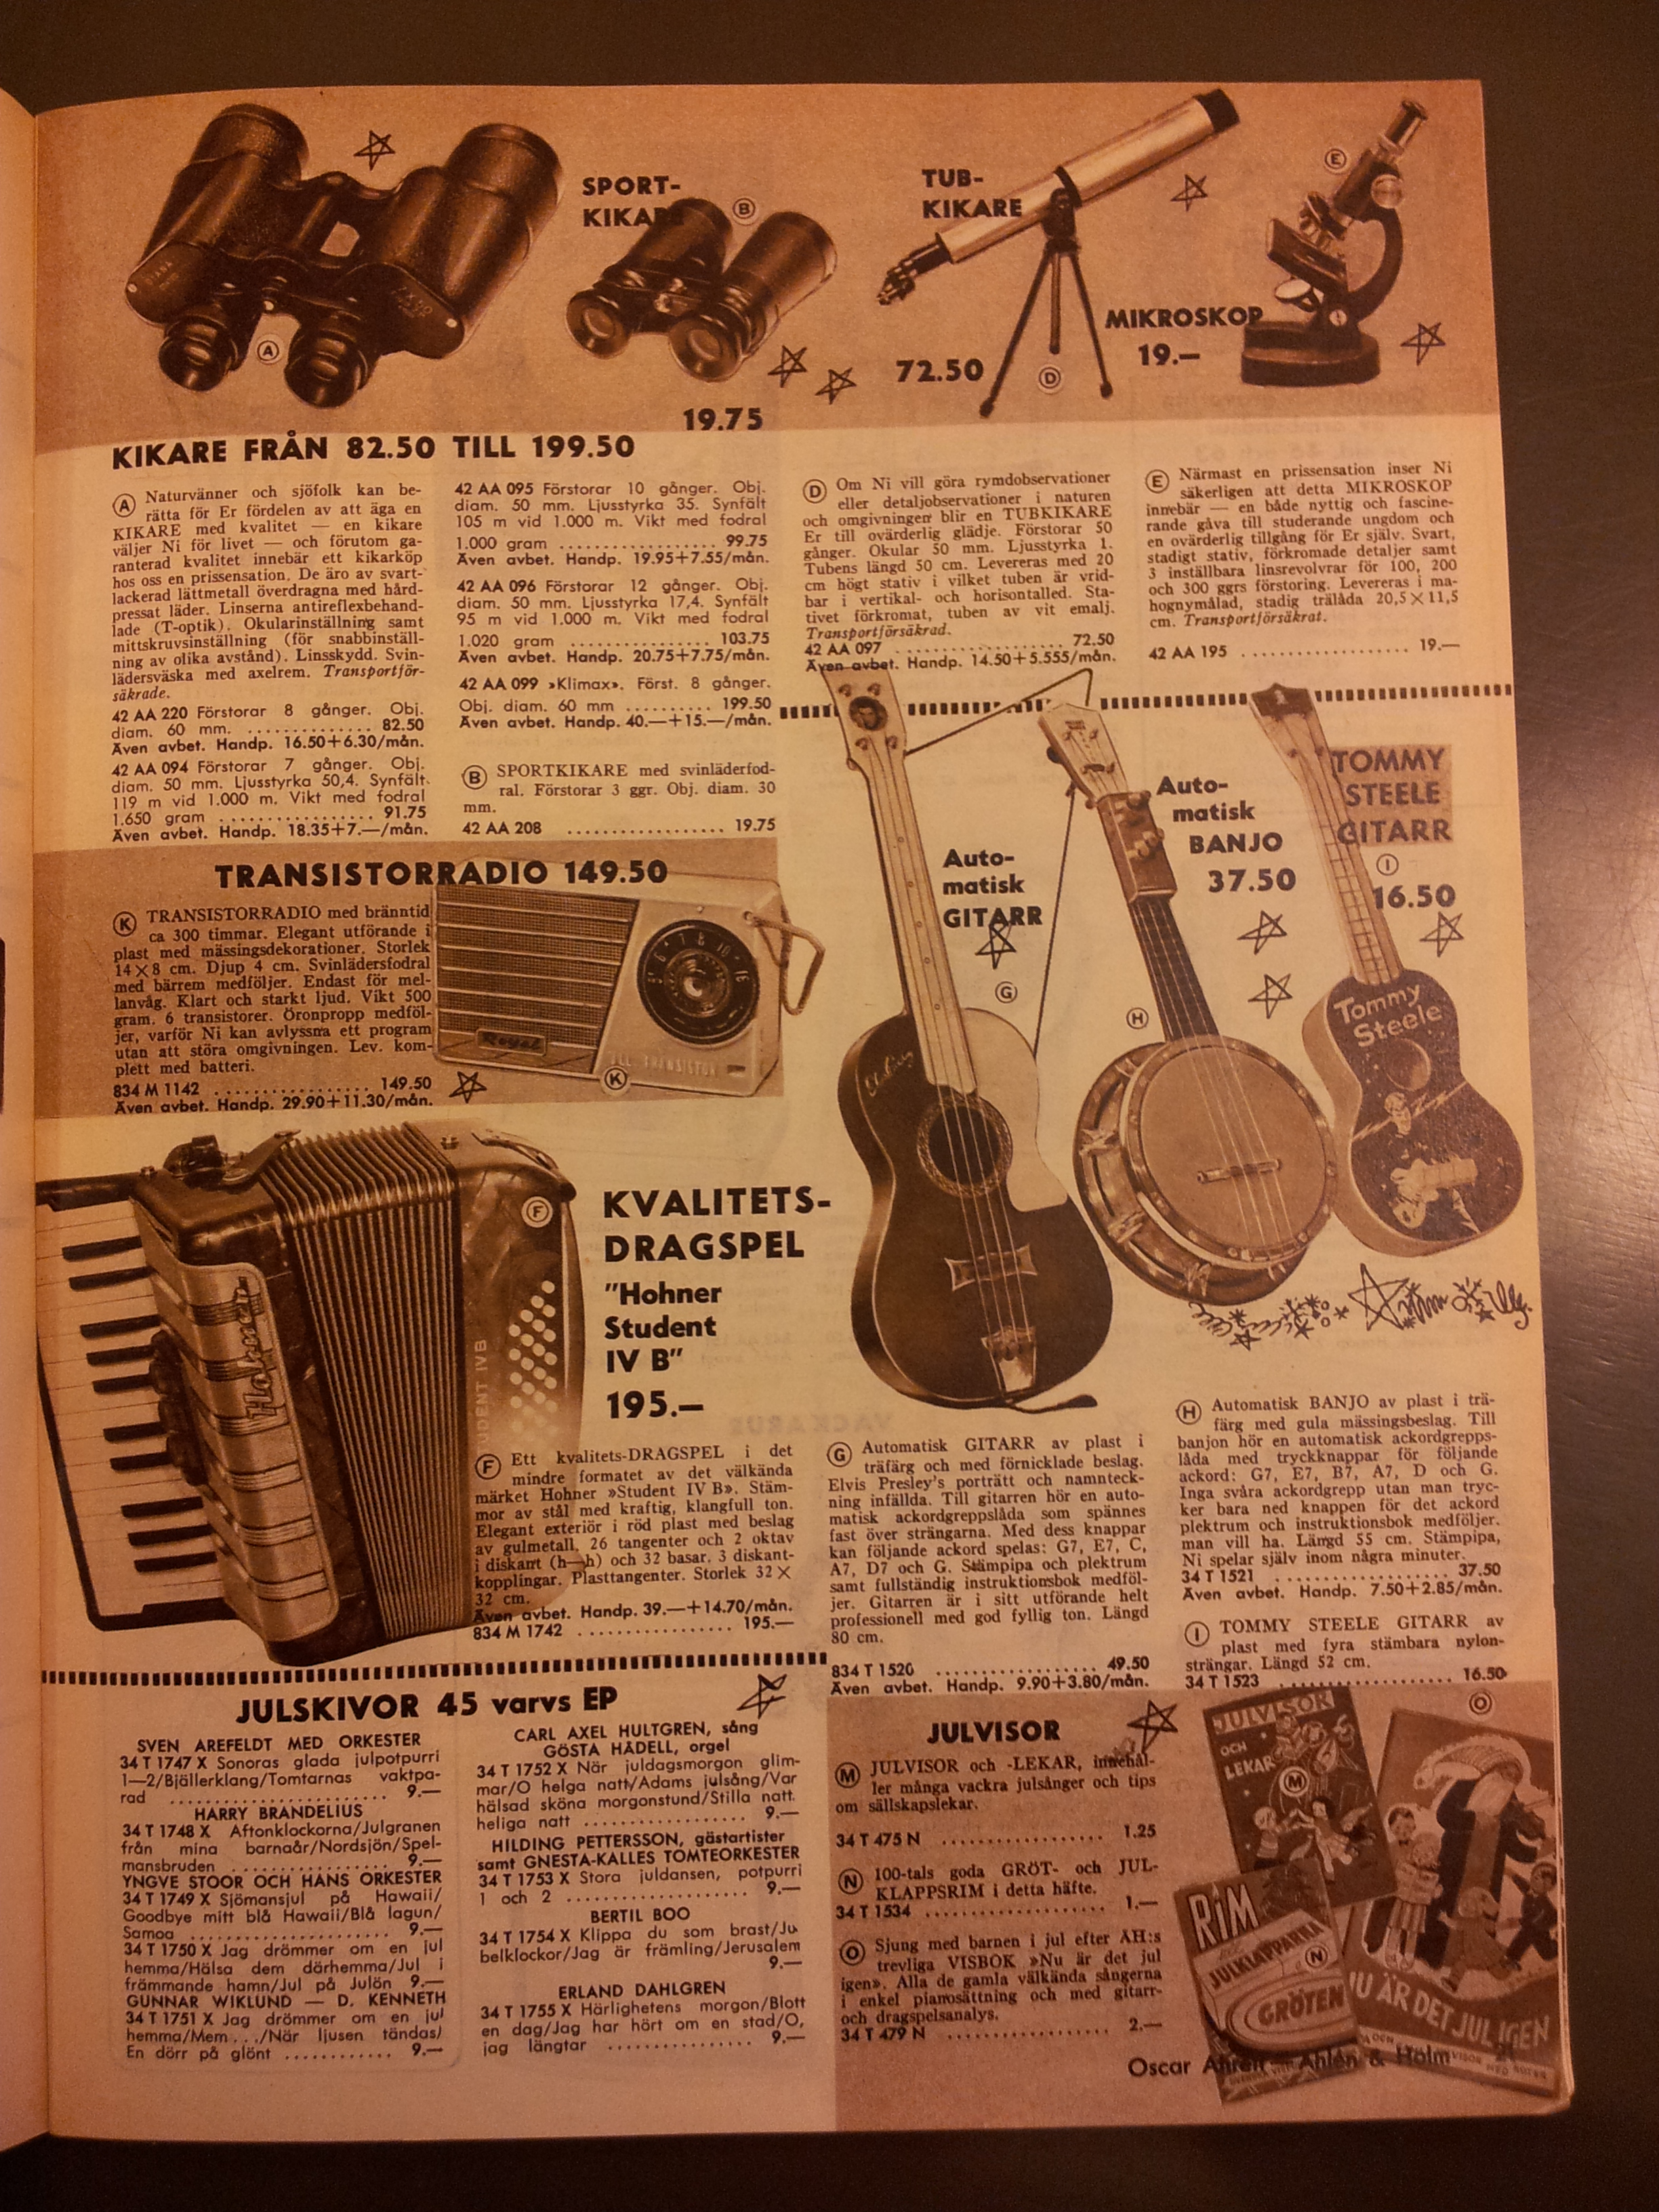 Åhlén & Holms julkatalog 1959. Här dyker de falskskyltade ukulelerna upp för första gången. I allehanda lustiga förklädnader, dessutom.